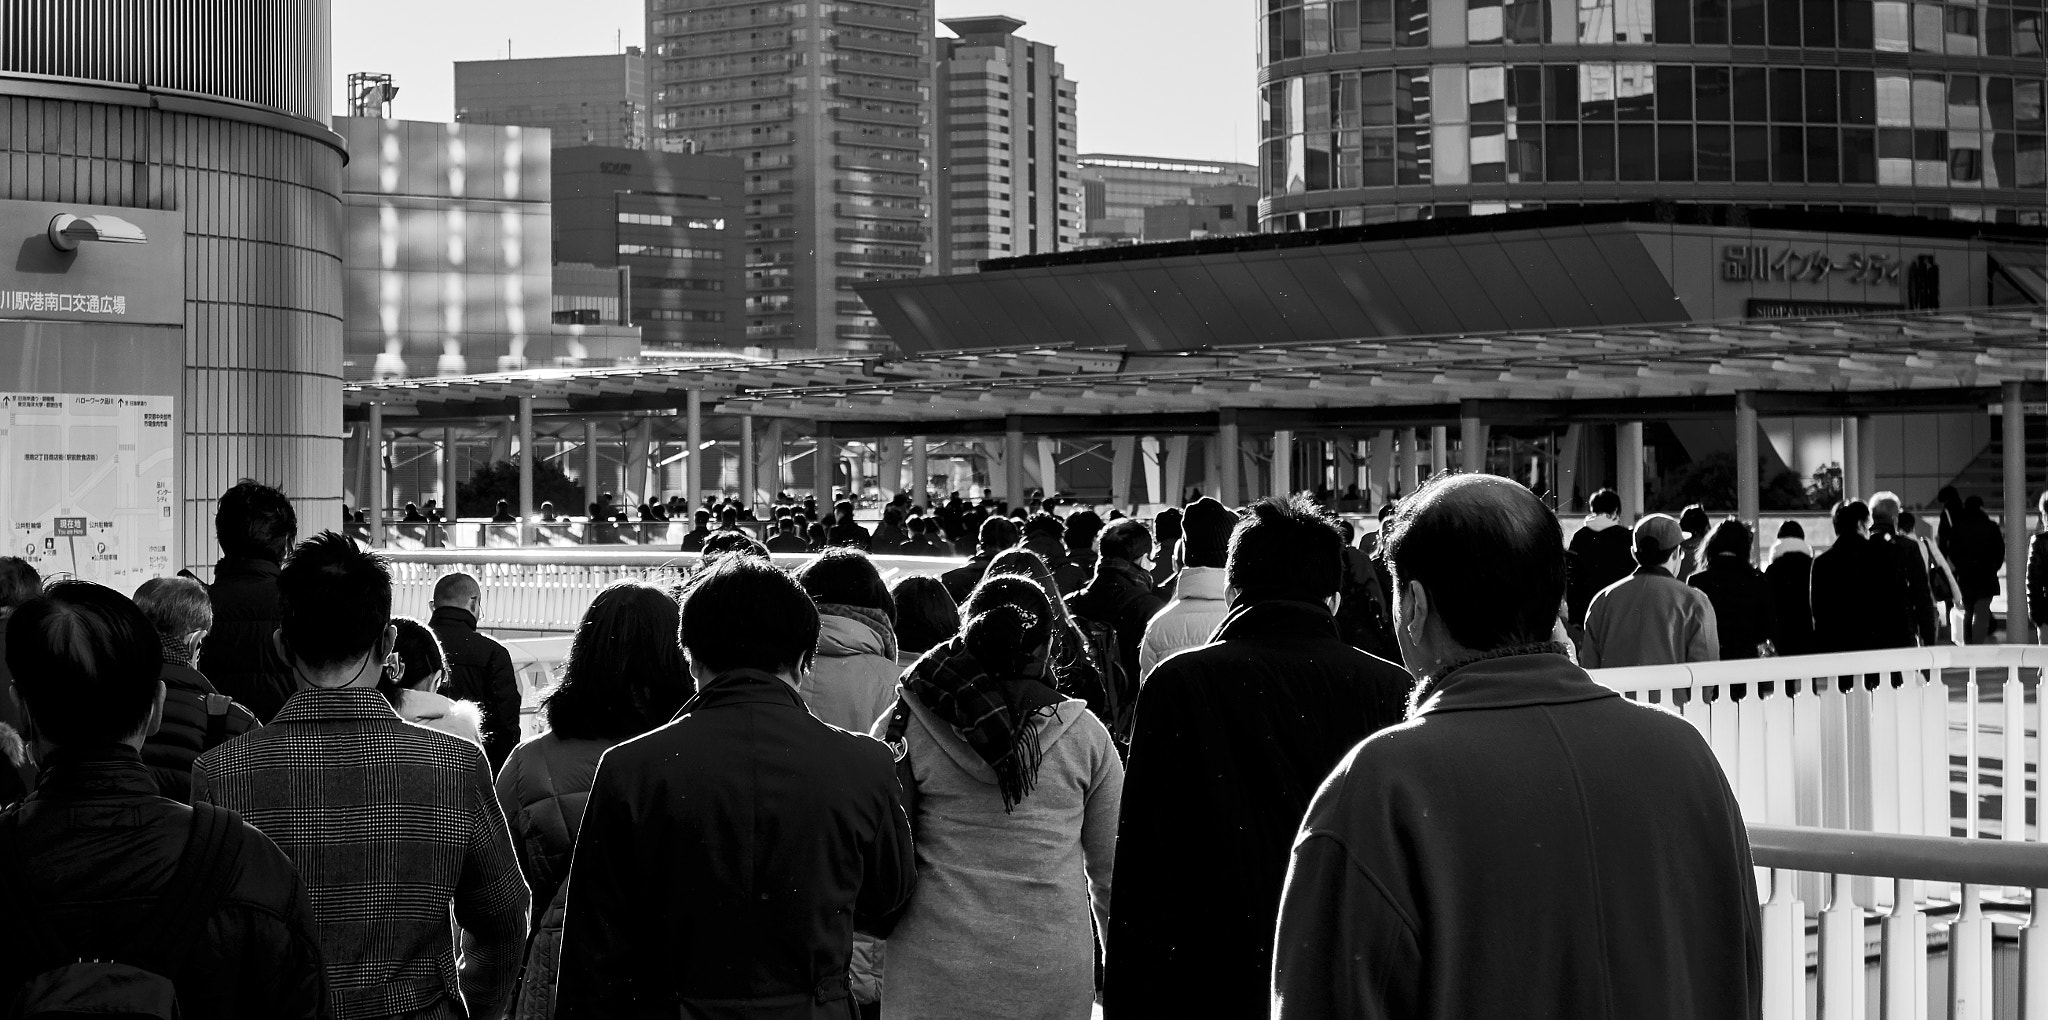 Sony Cyber-shot DSC-RX100 II + Sony Cyber-shot DSC-RX100 II sample photo. Winter morning commute crowd photography